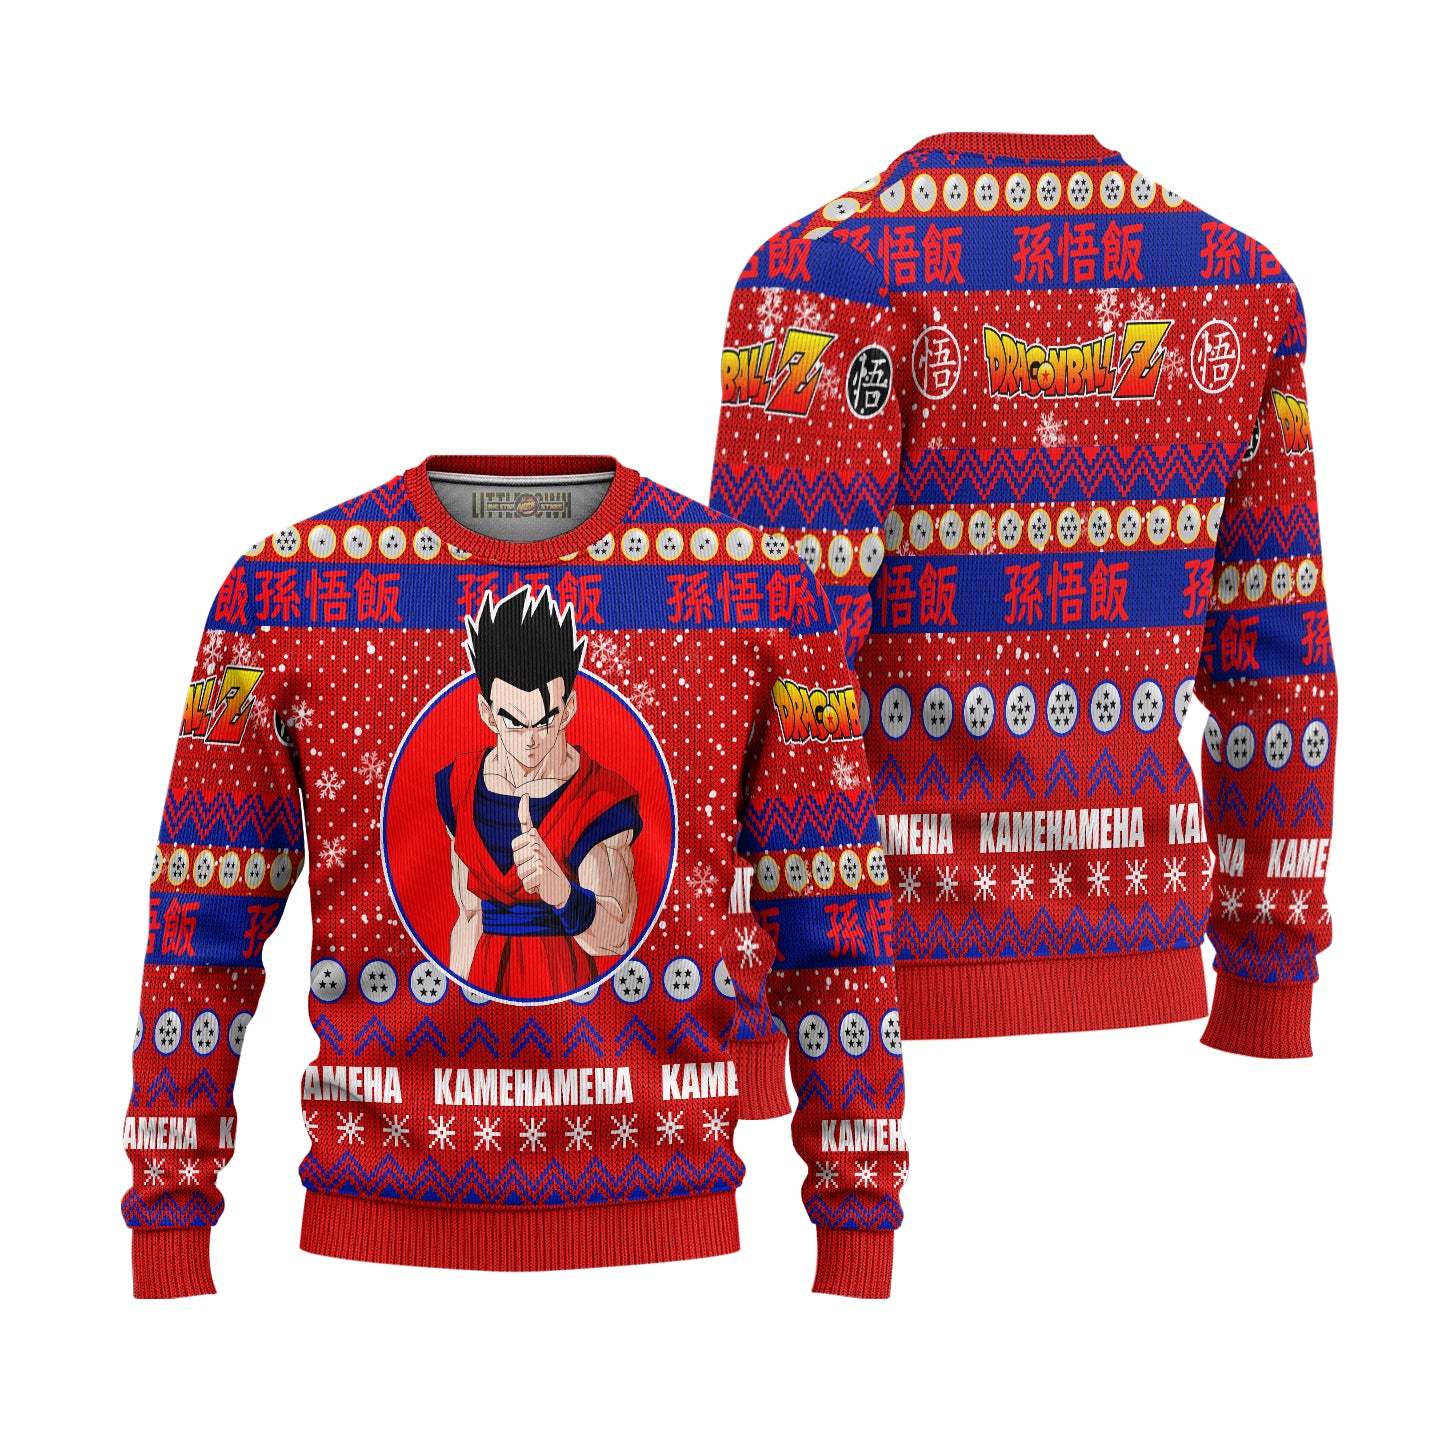 Son Gohan Anime Ugly Christmas Sweater Dragon Ball Z New Design